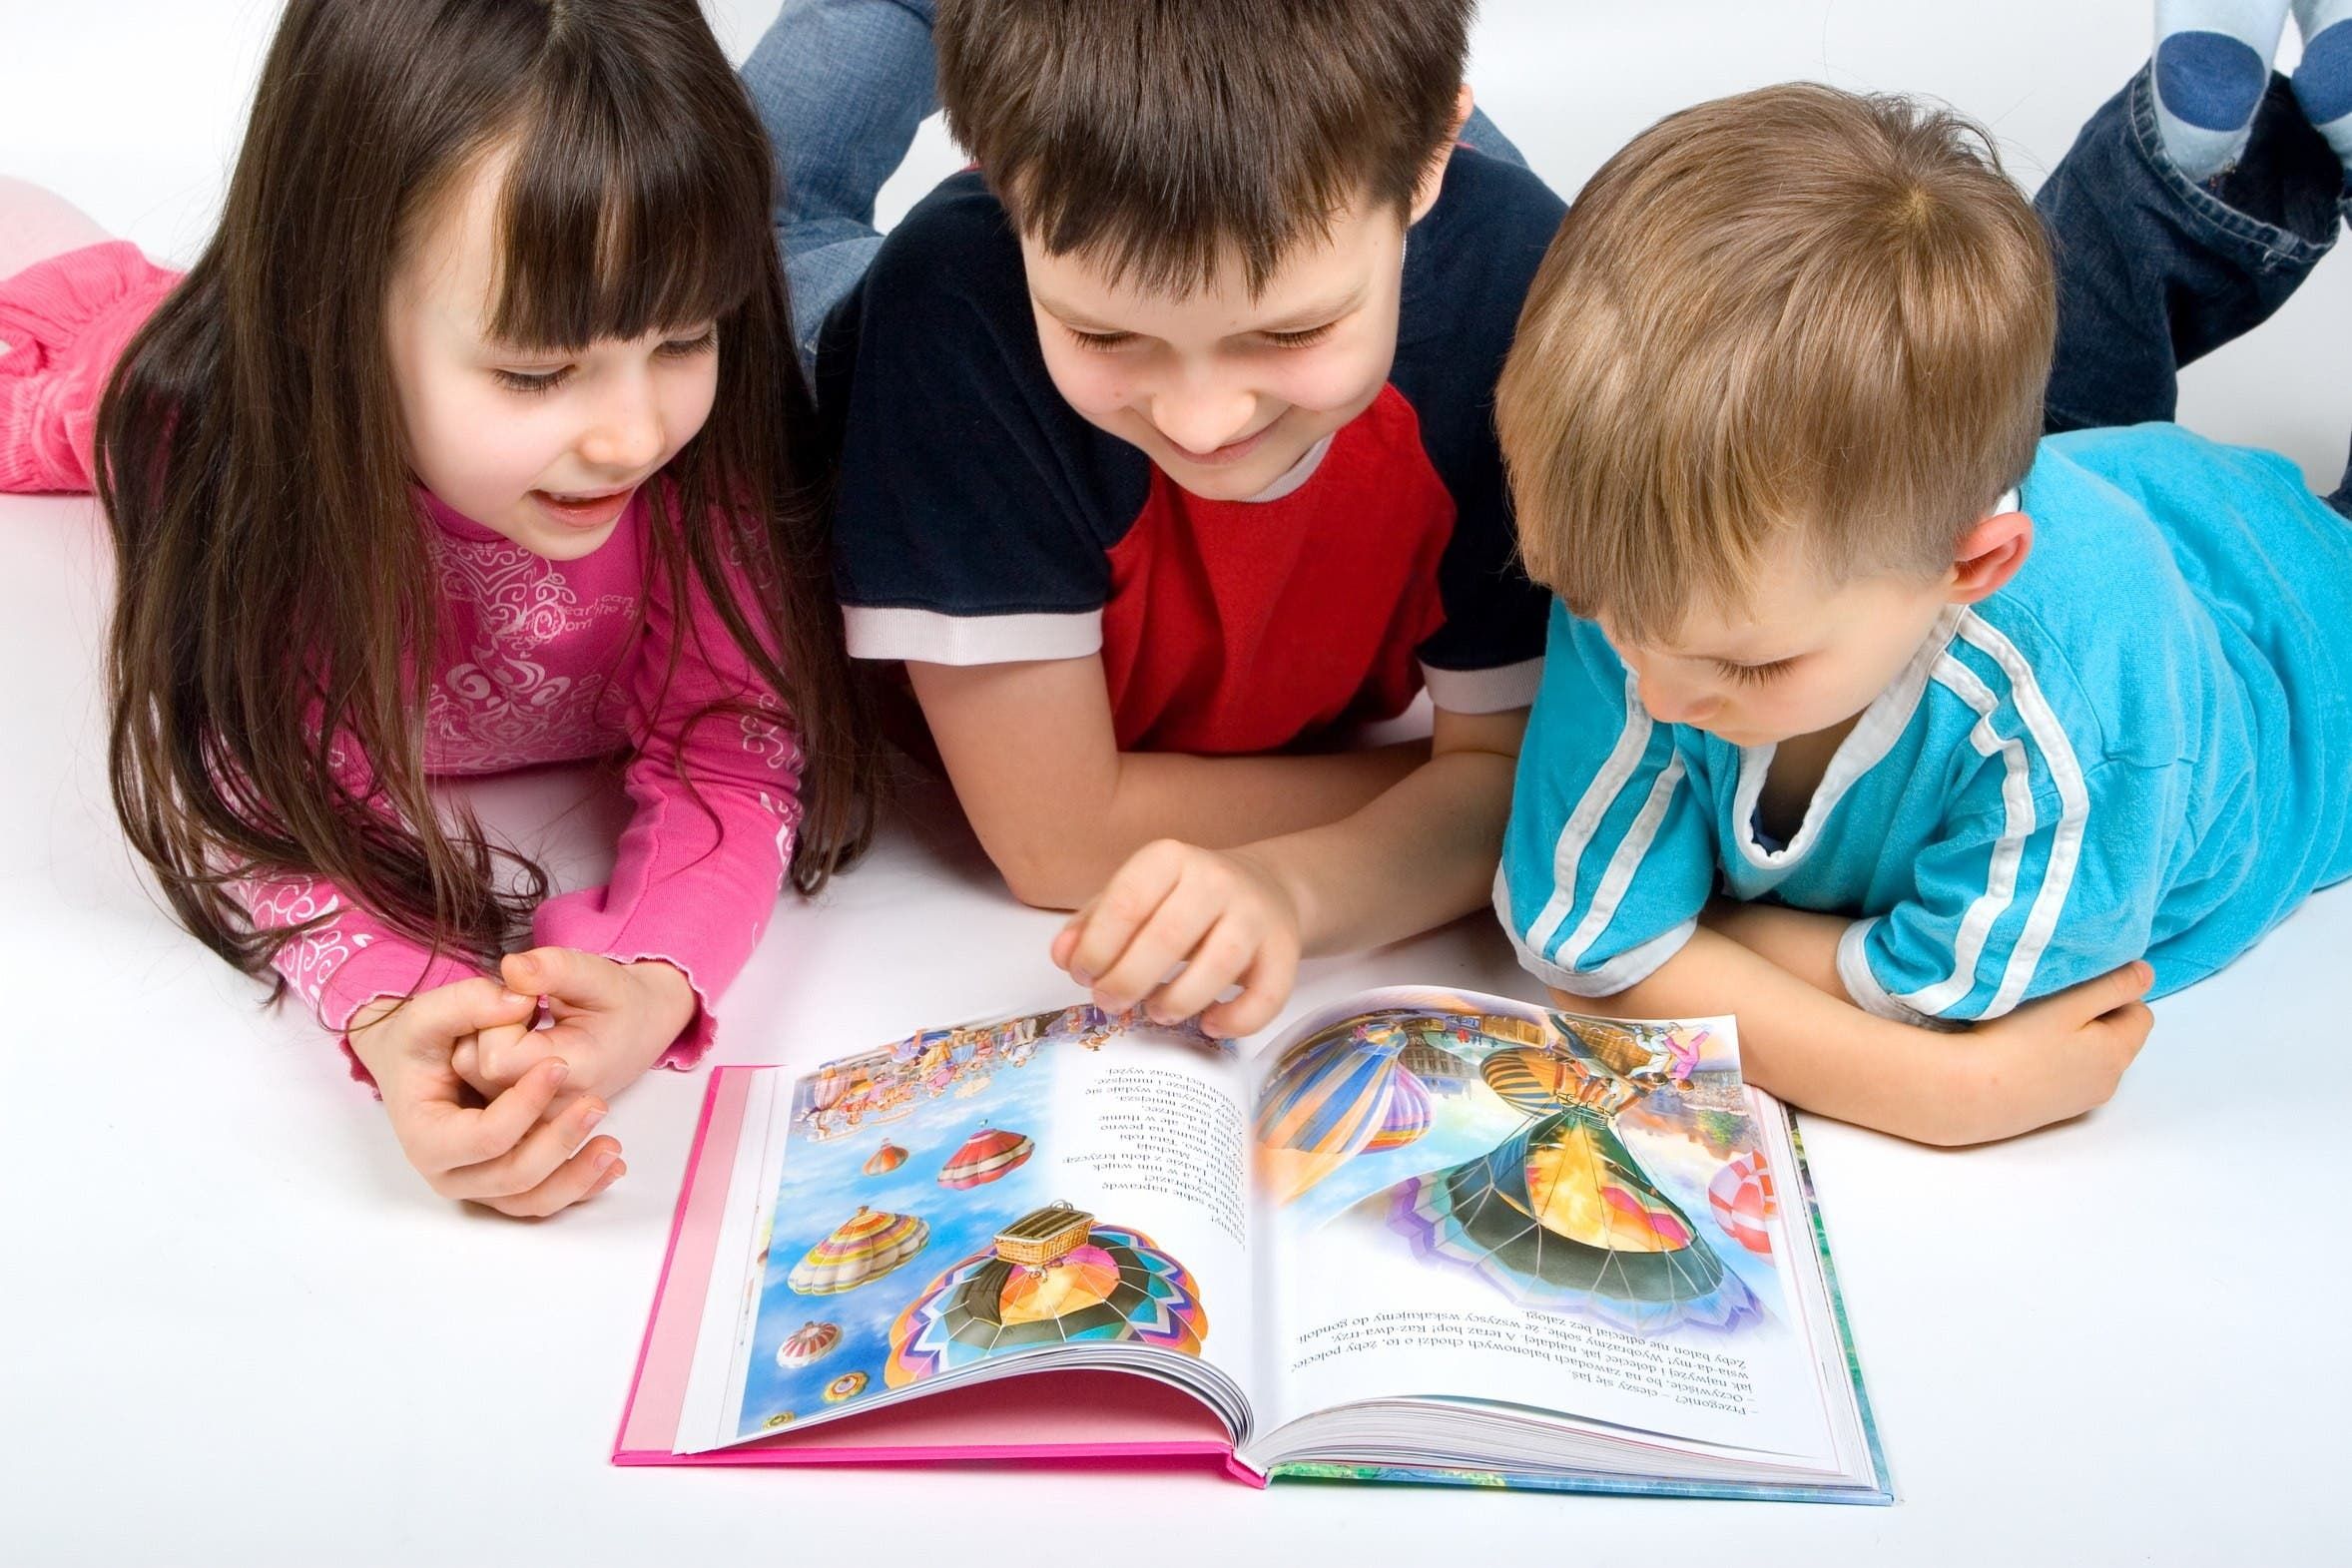 Забагато картинок у книгах заважає дітям зрозуміти прочитане, – вчені